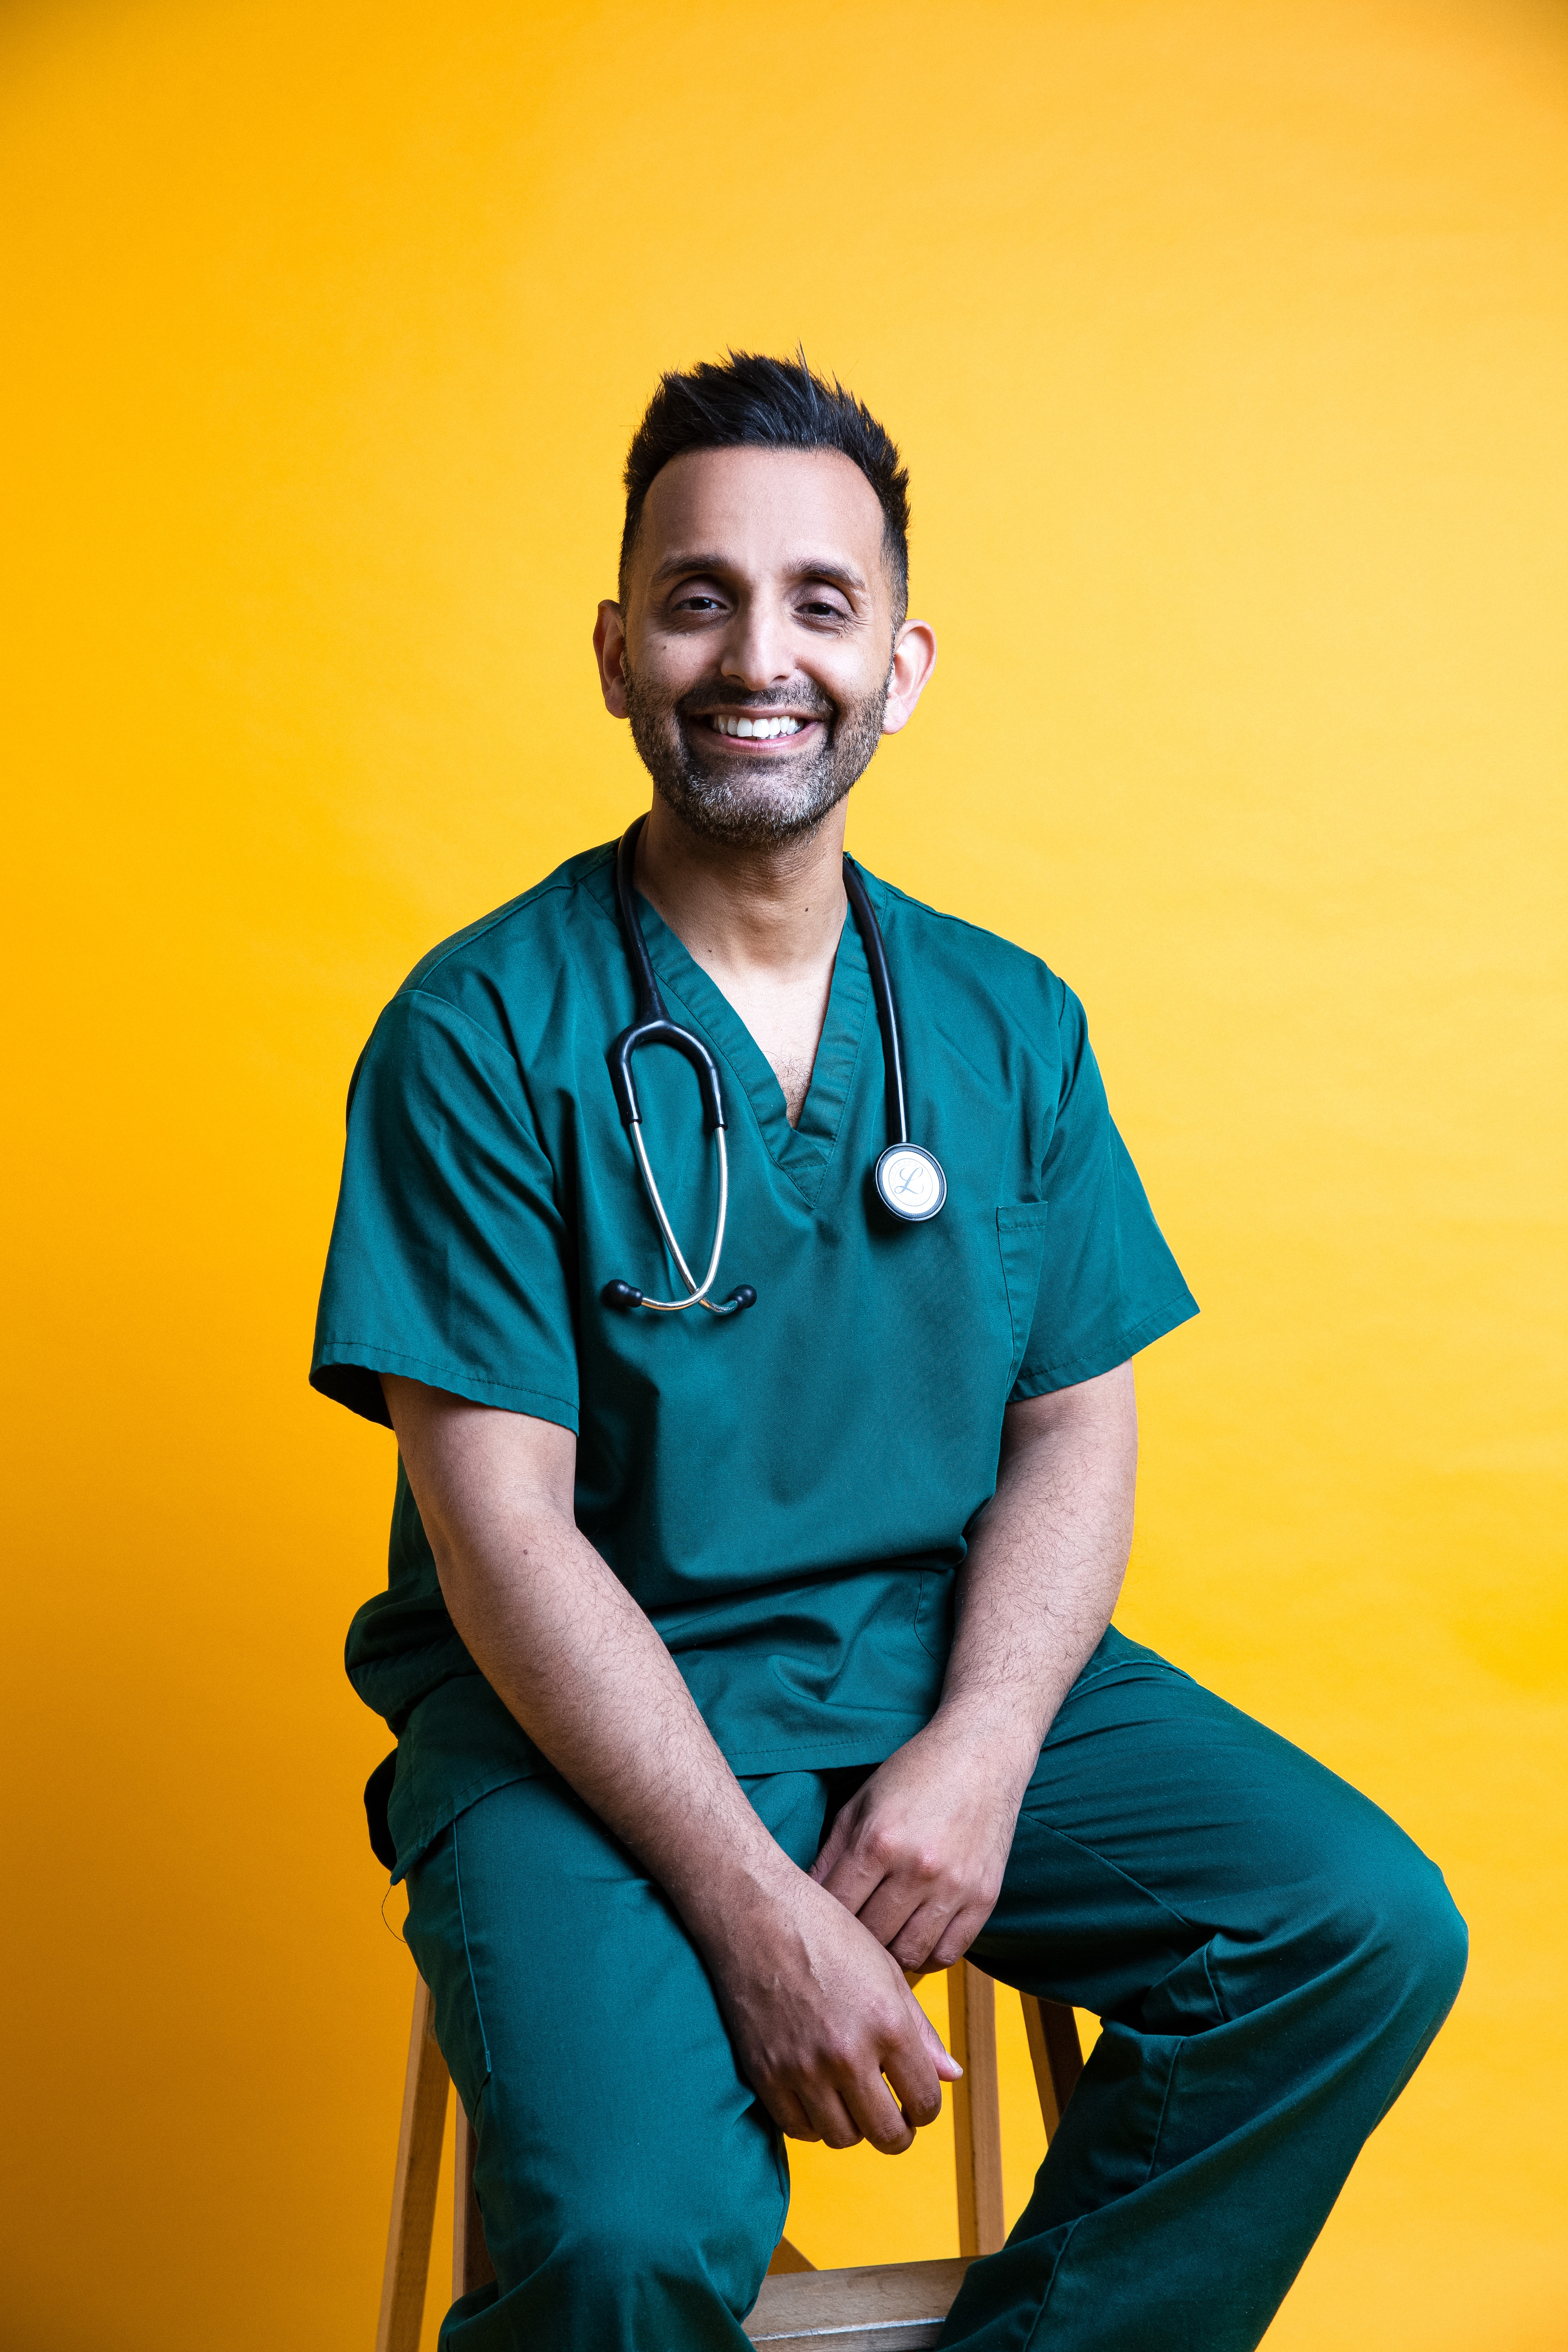 Dr Amir Khan (Dr Amir Khan/PA)